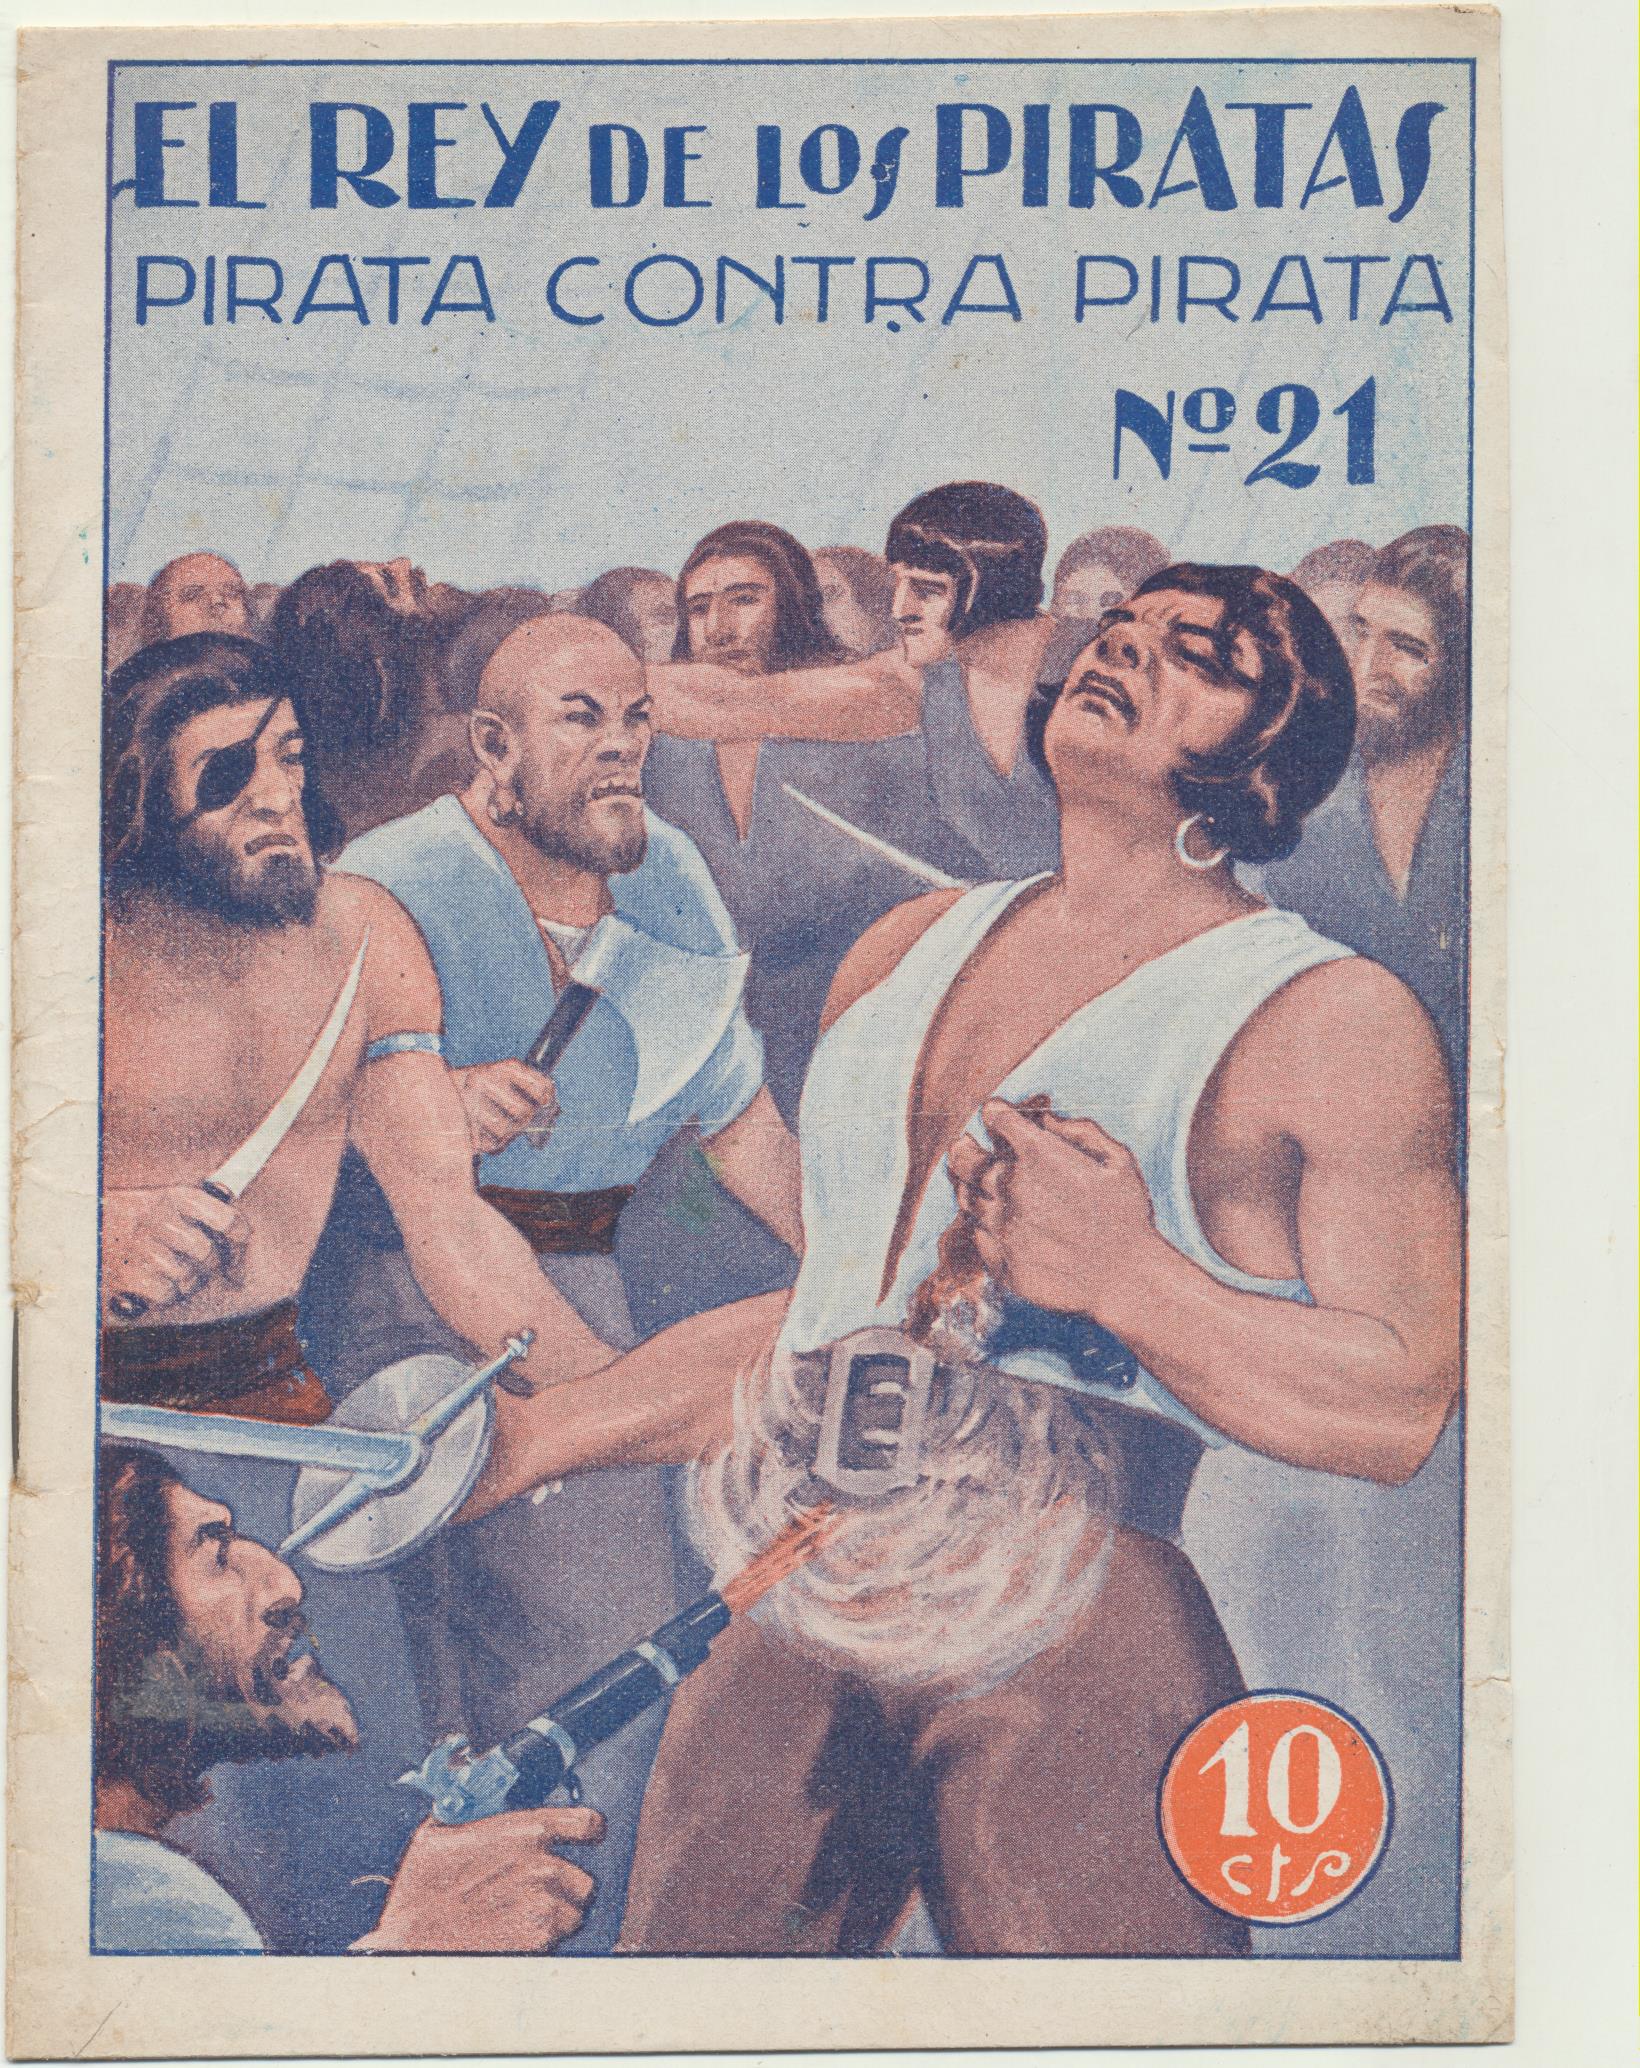 El Rey de los Piratas nº 21. Ediciones El cine 192? (18x13) 16 páginas con ilustraciones